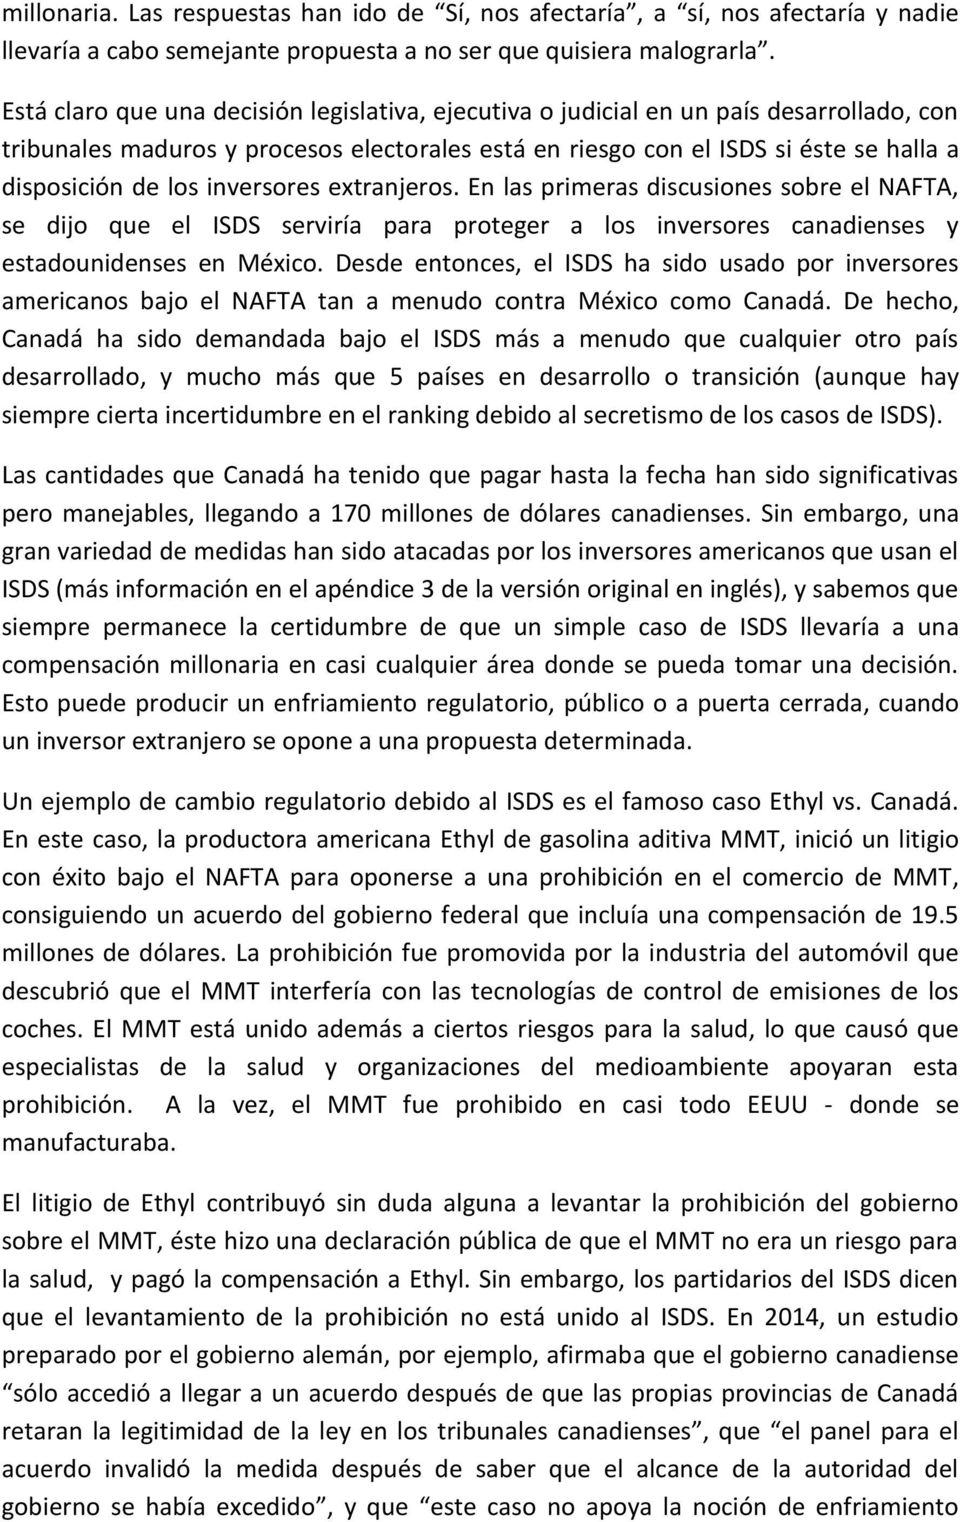 inversores extranjeros. En las primeras discusiones sobre el NAFTA, se dijo que el ISDS serviría para proteger a los inversores canadienses y estadounidenses en México.